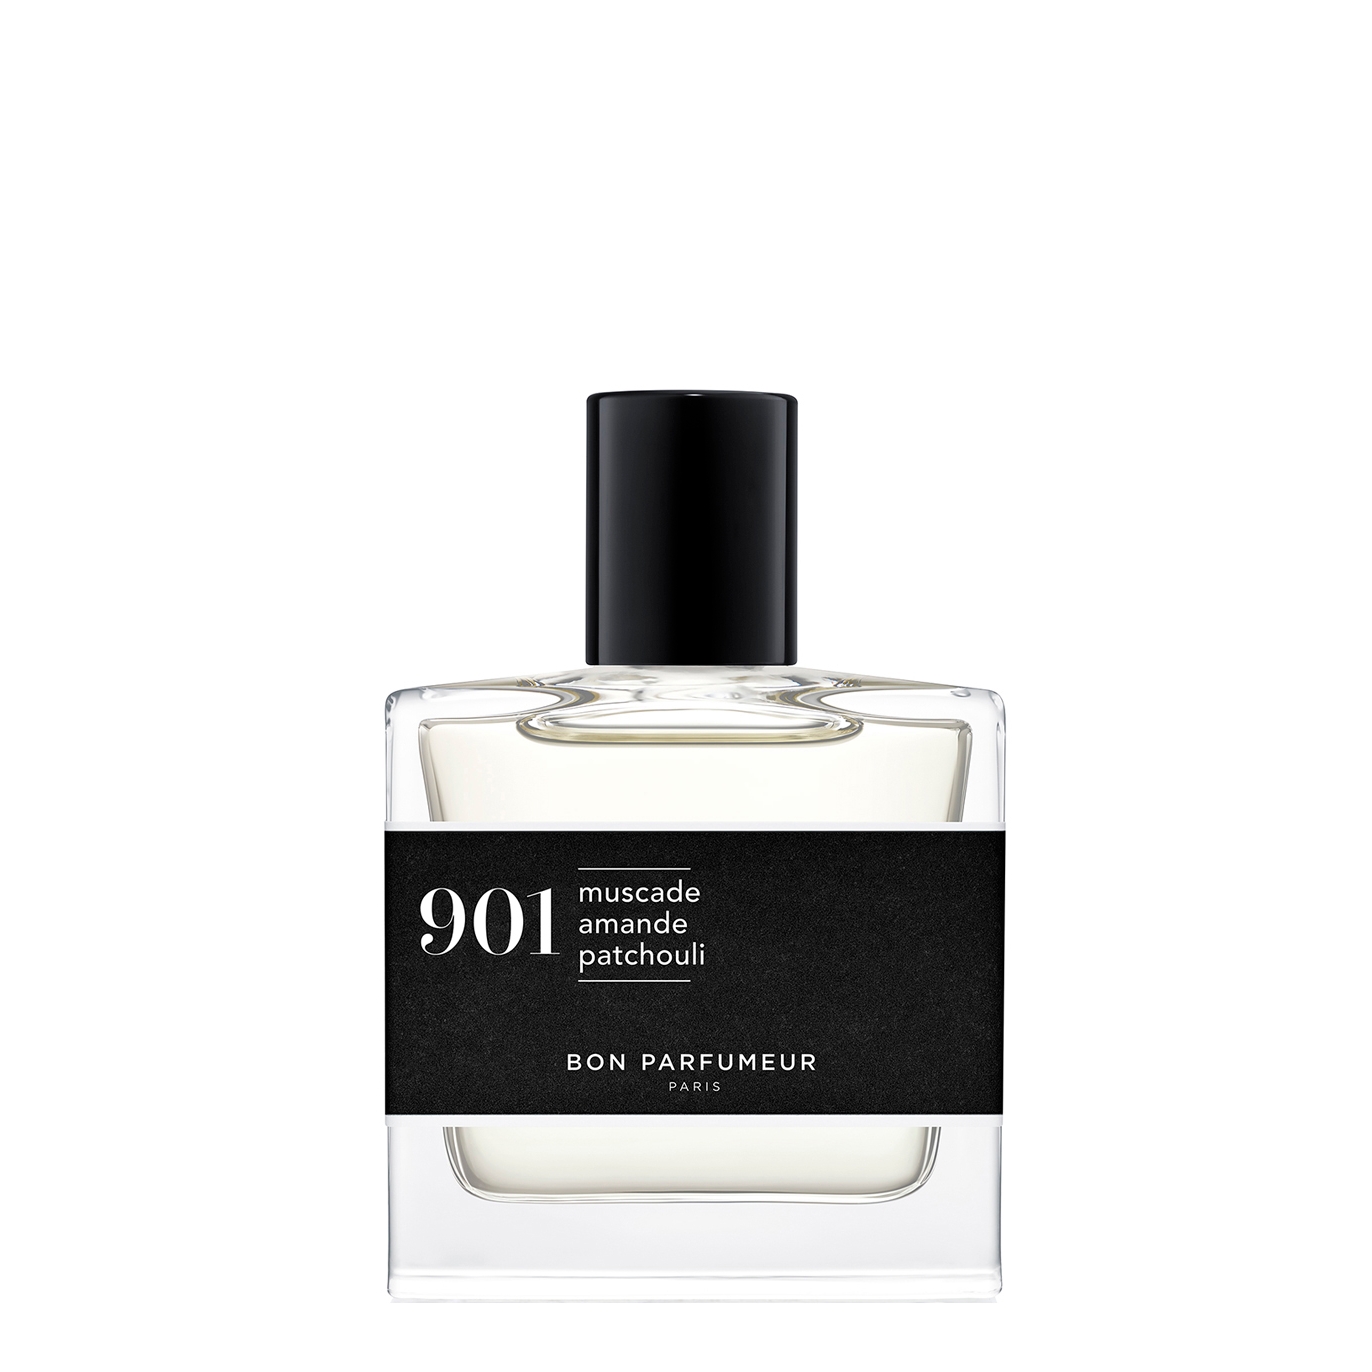 Bon Parfumeur 901 Nutmeg Almond Patchouli Eau De Parfum 30ml